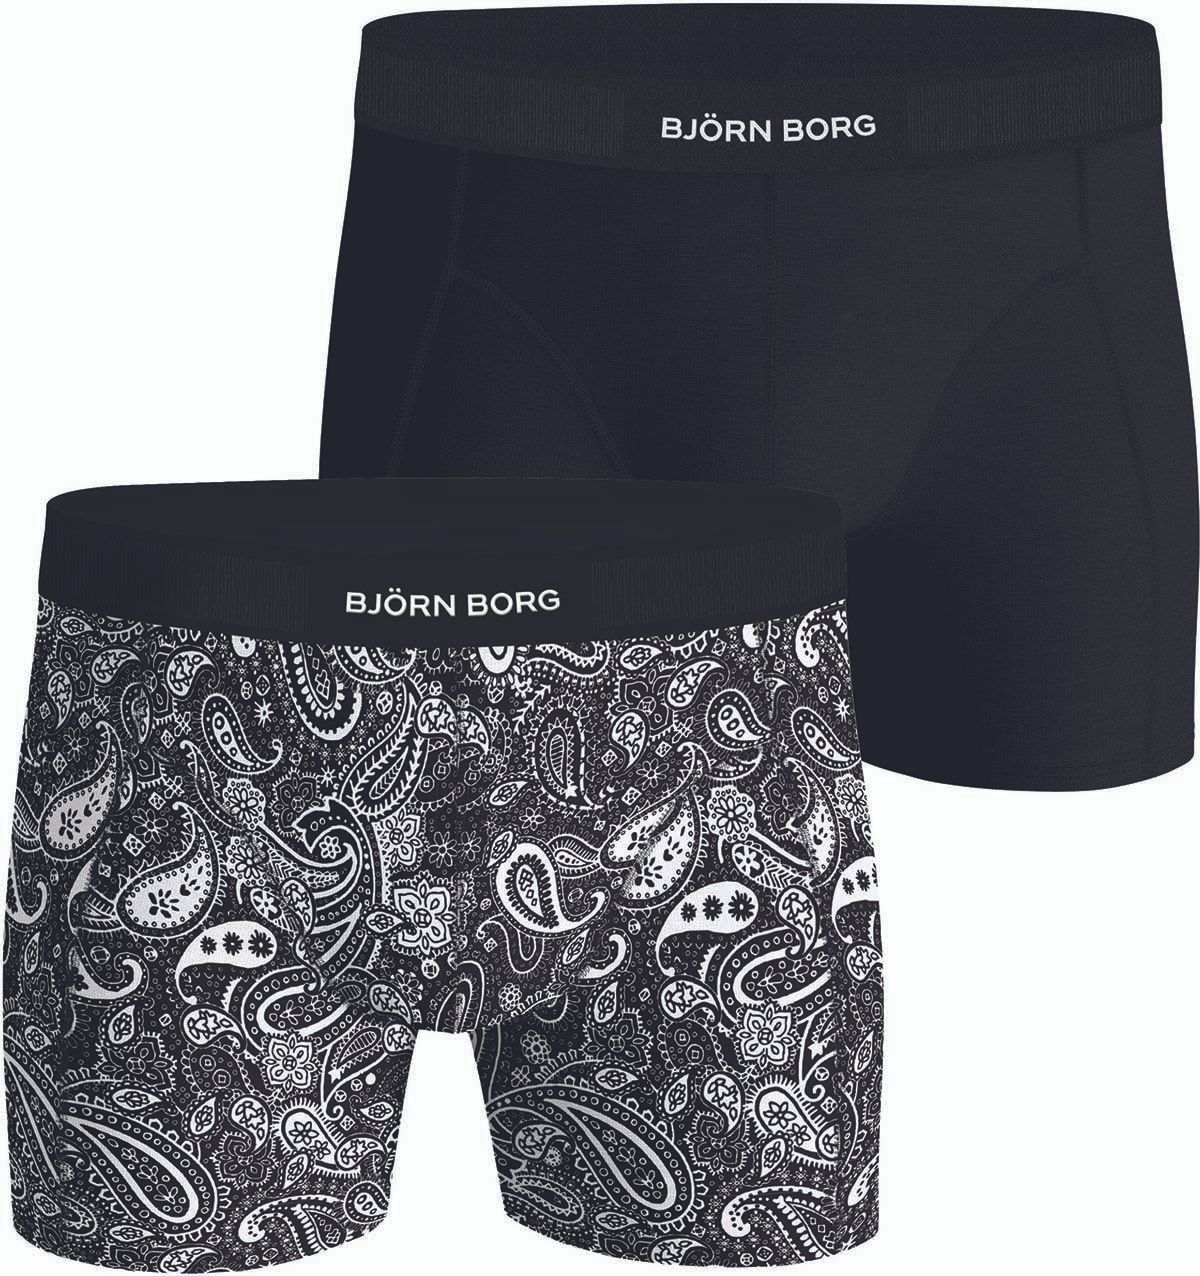 Bjorn Borg Performance Boxers 2-Pack Black size L